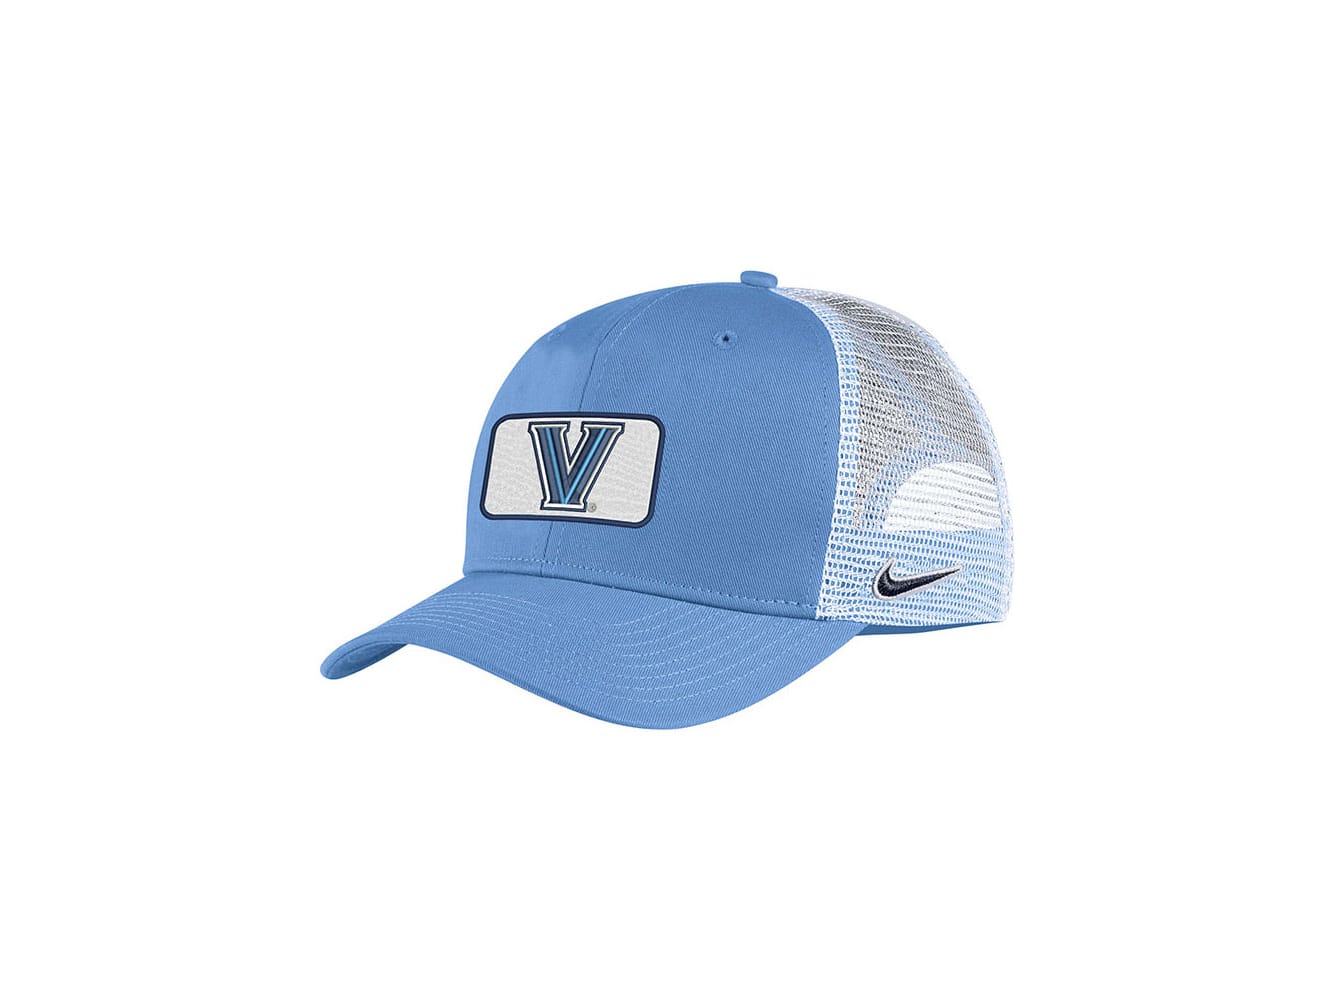 Fitted & Flex Fit Villanova Hats